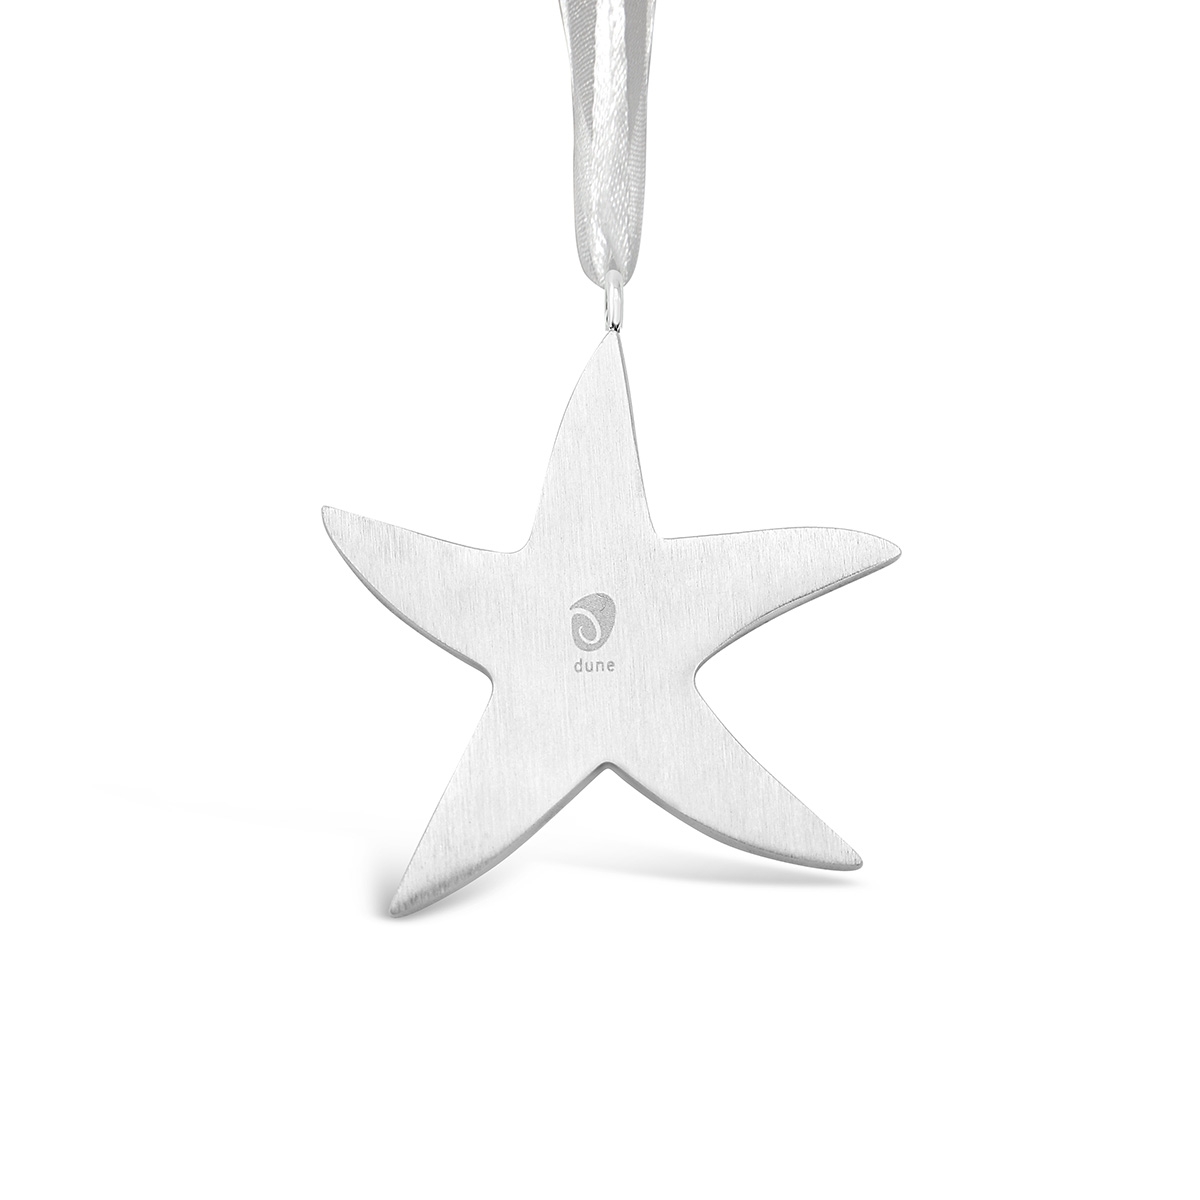 Starfish Ornament | Handmade | Dune Jewelry